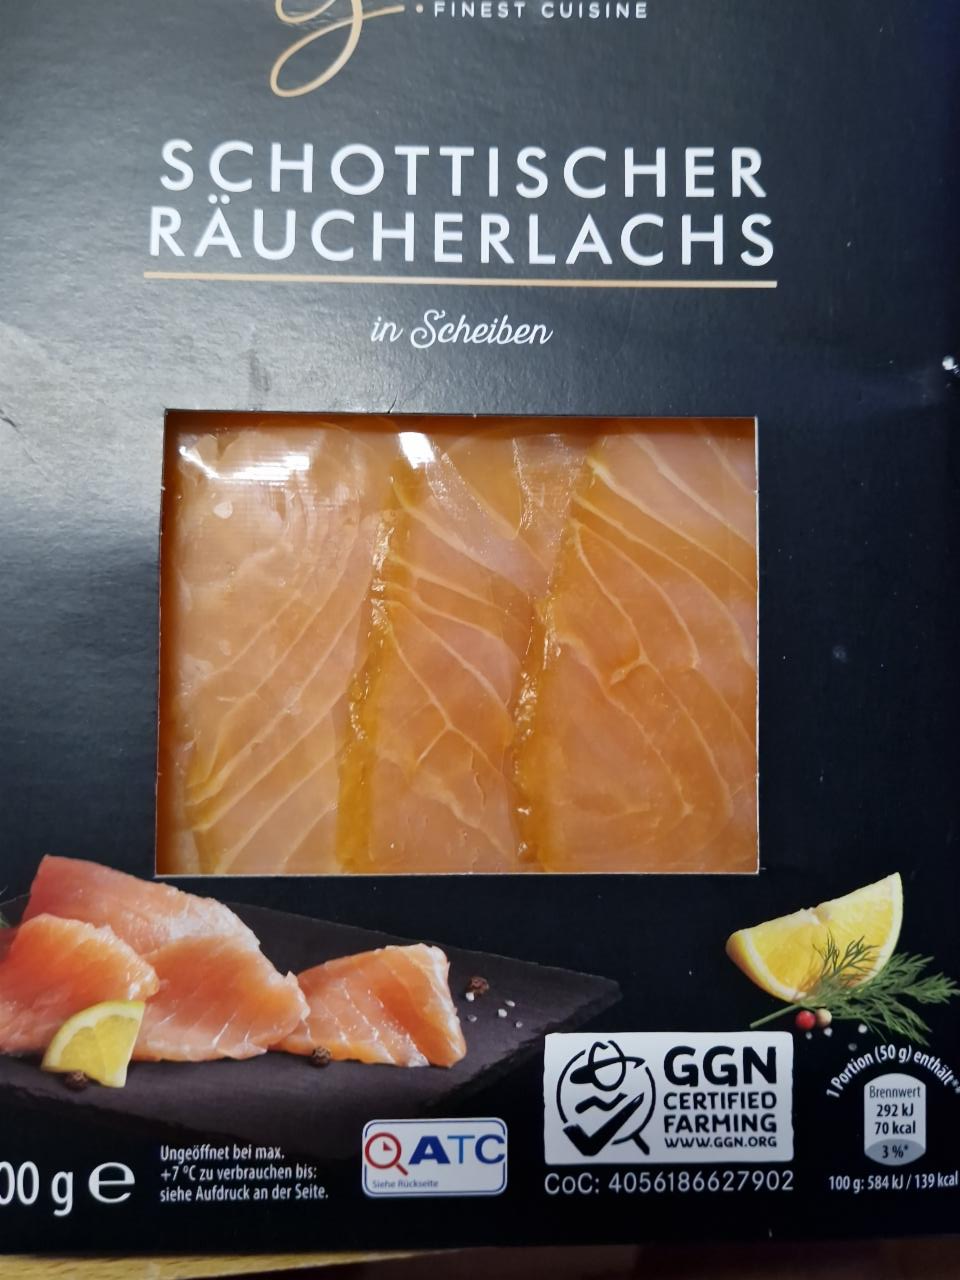 Fotografie - Schottischer Räucherlachs in Scheiben Gourmet finest cuisine